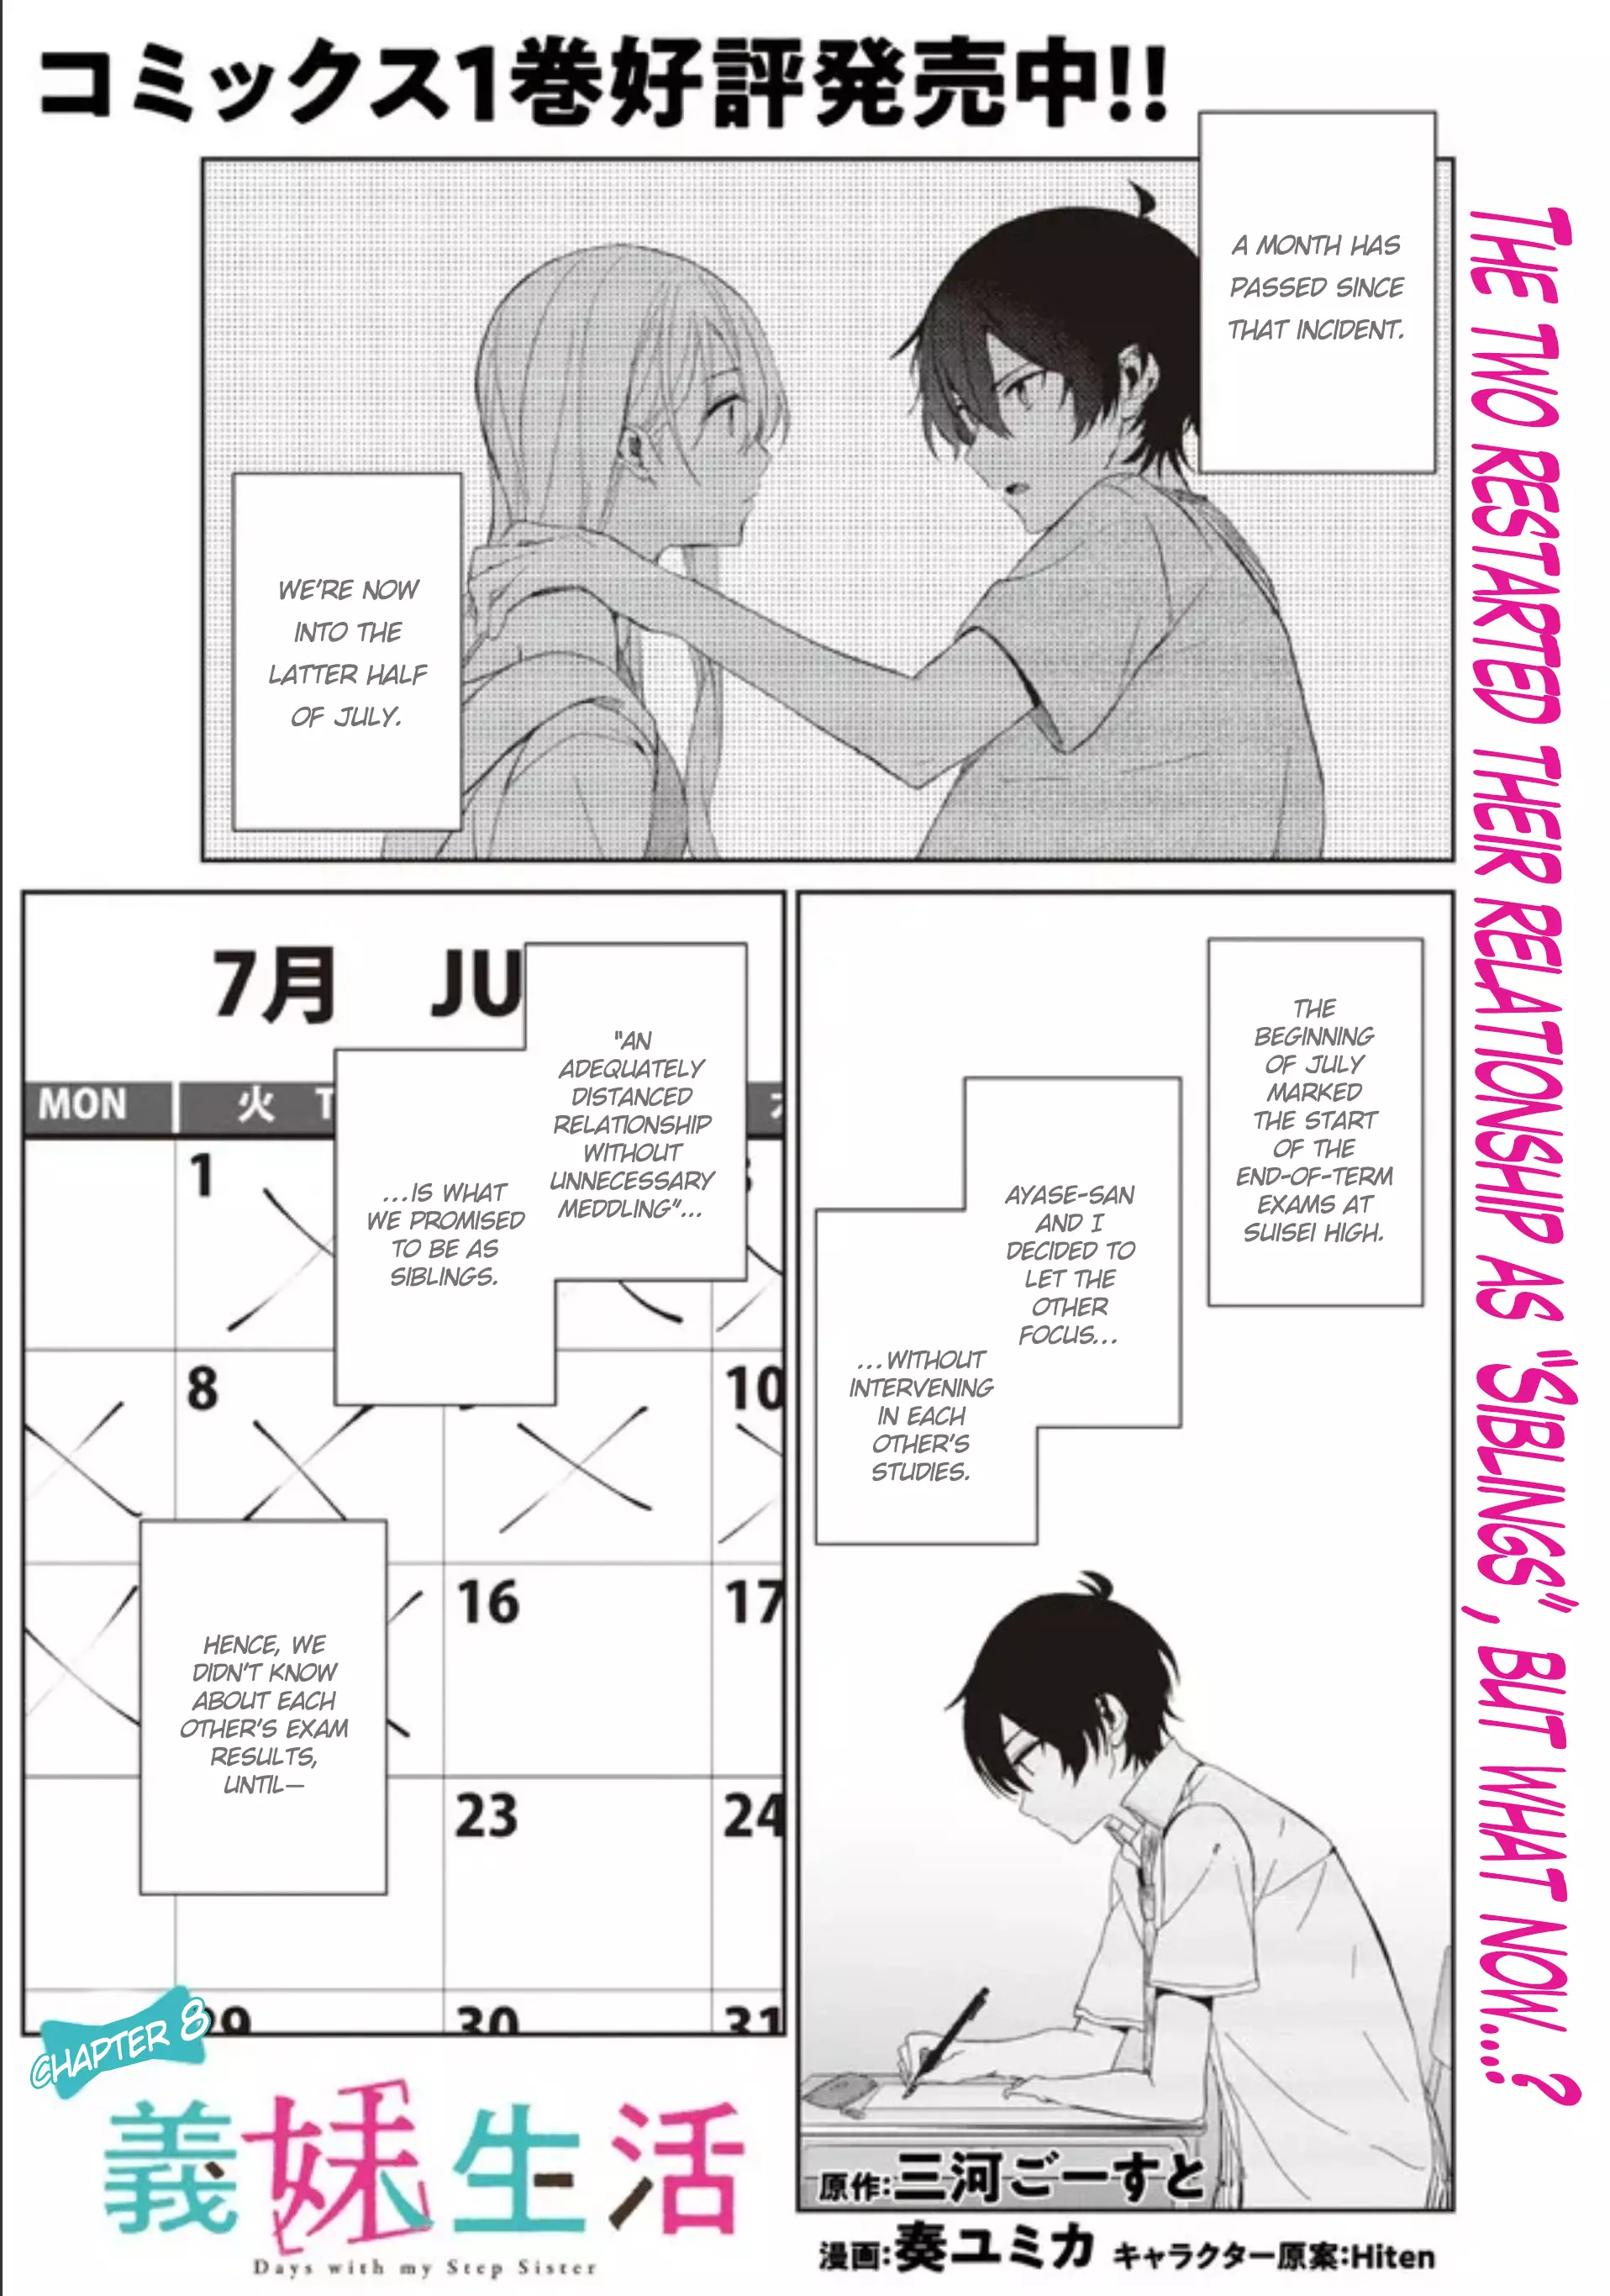 Gimai Seikatsu - 8.1 page 1-174d6ab8